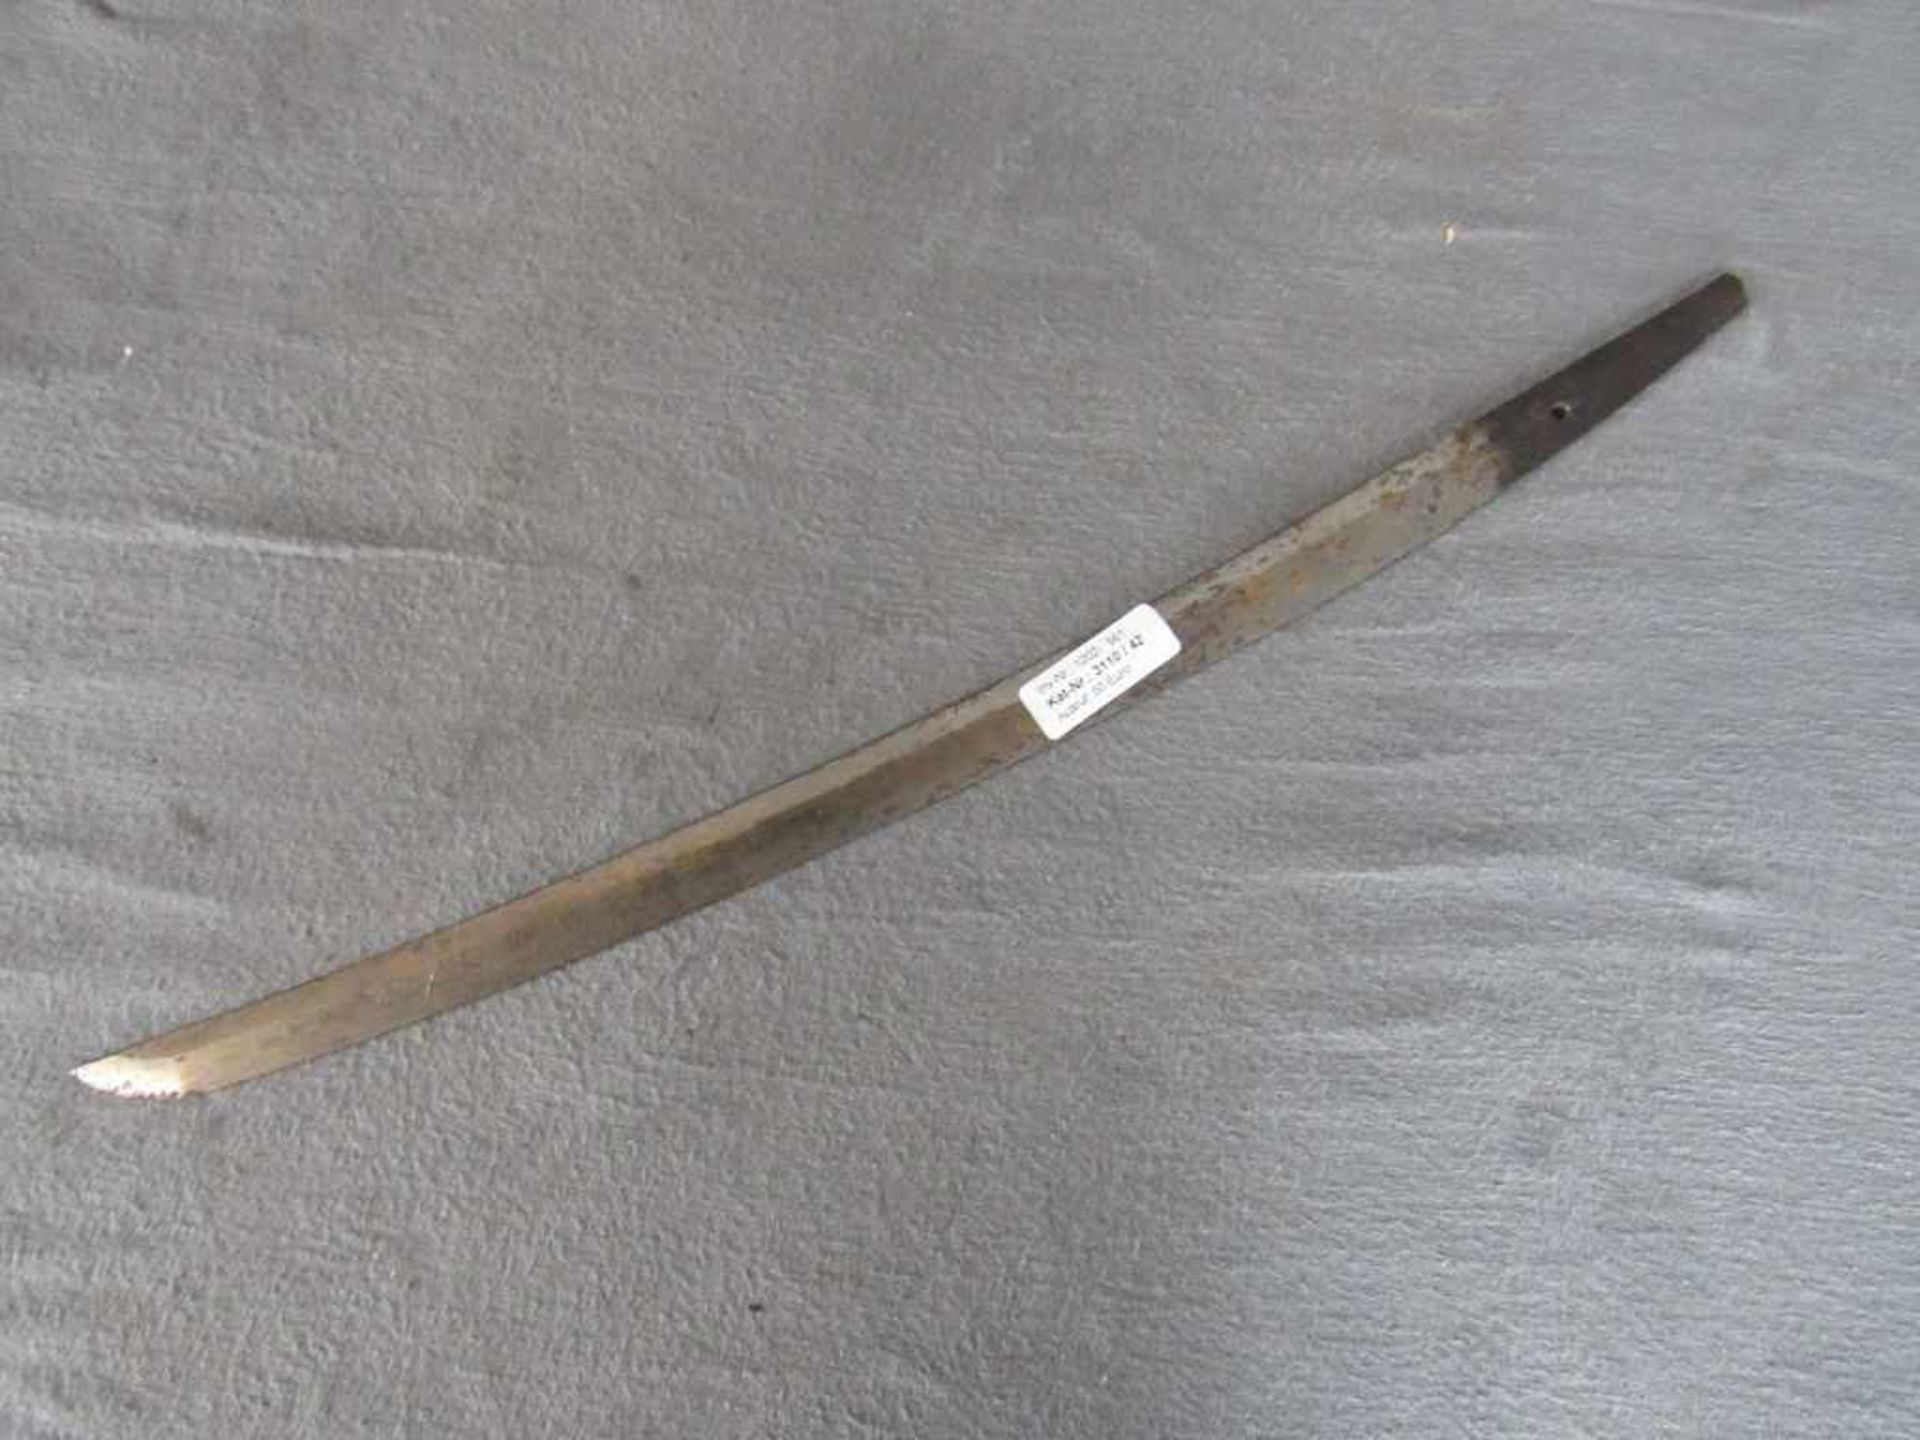 Japanische Klinge eines Samuraischwertes Länge:58cm- - -20.00 % buyer's premium on the hammer